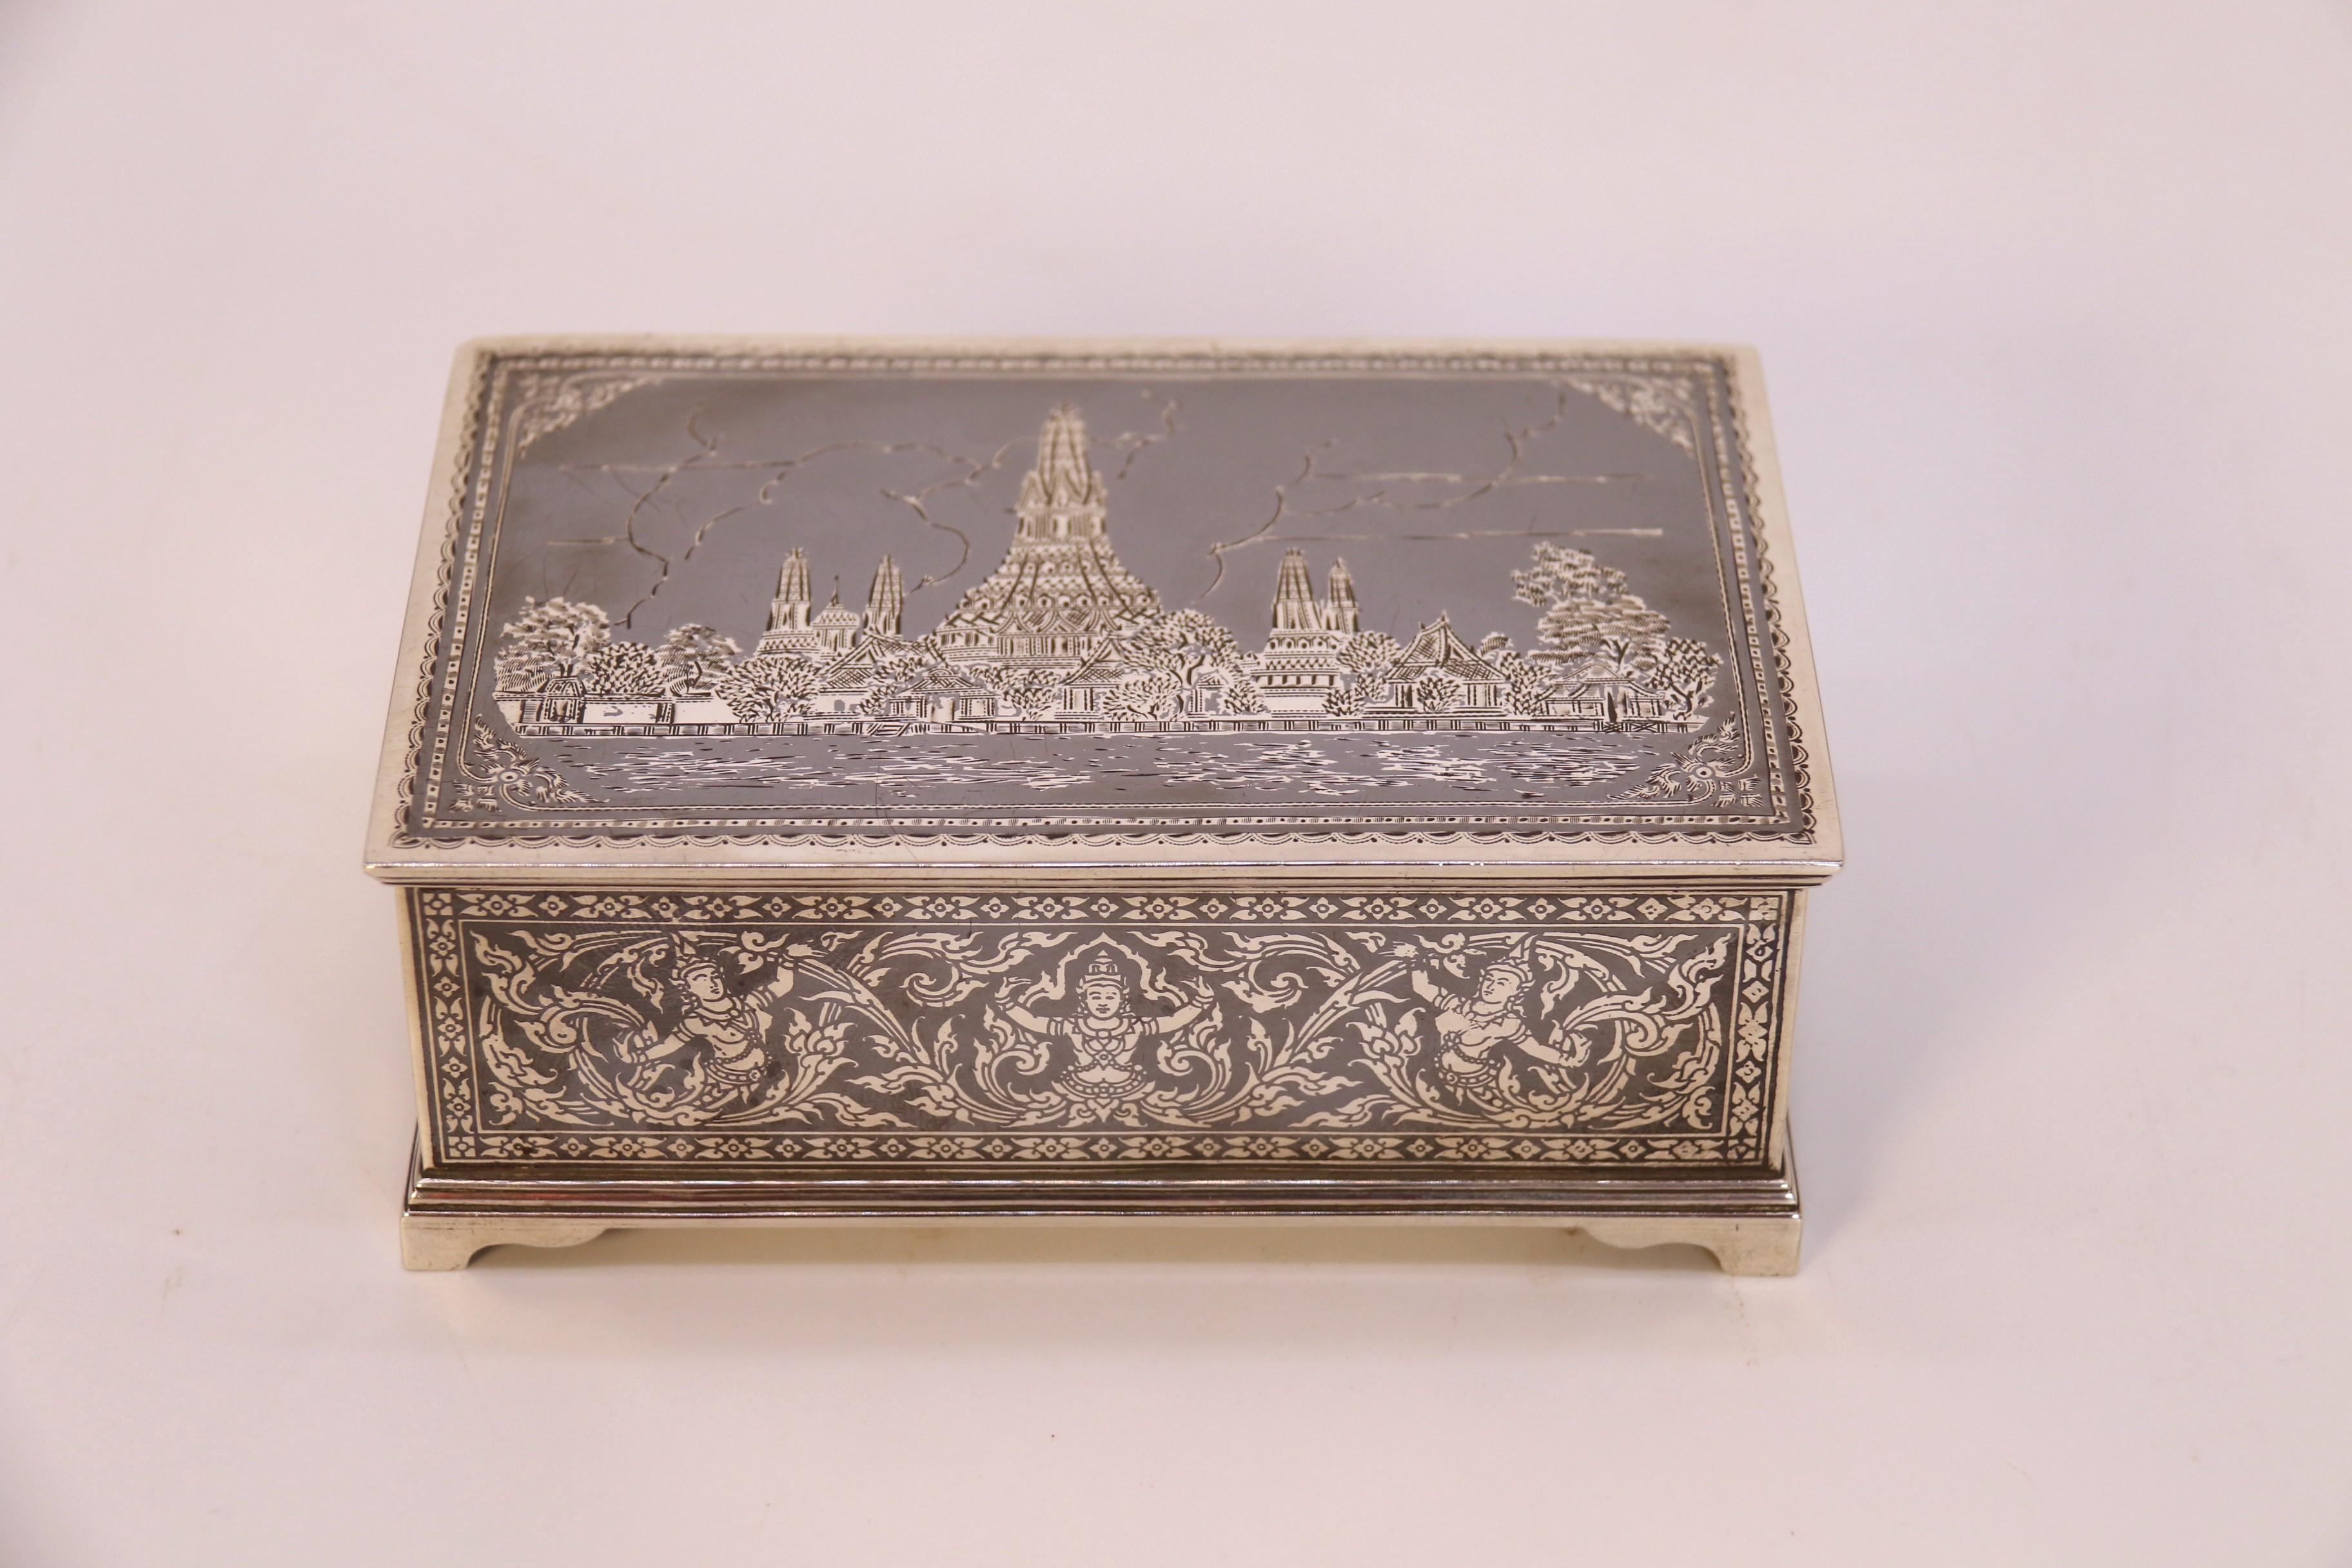 
Cette boîte en argent très intéressante et décorative a été fabriquée au Siam, aujourd'hui la Thaïlande, vers 1920. Il est fabriqué en argent massif de haute qualité (testé) et est magnifiquement décoré d'un travail de niellage qui est une